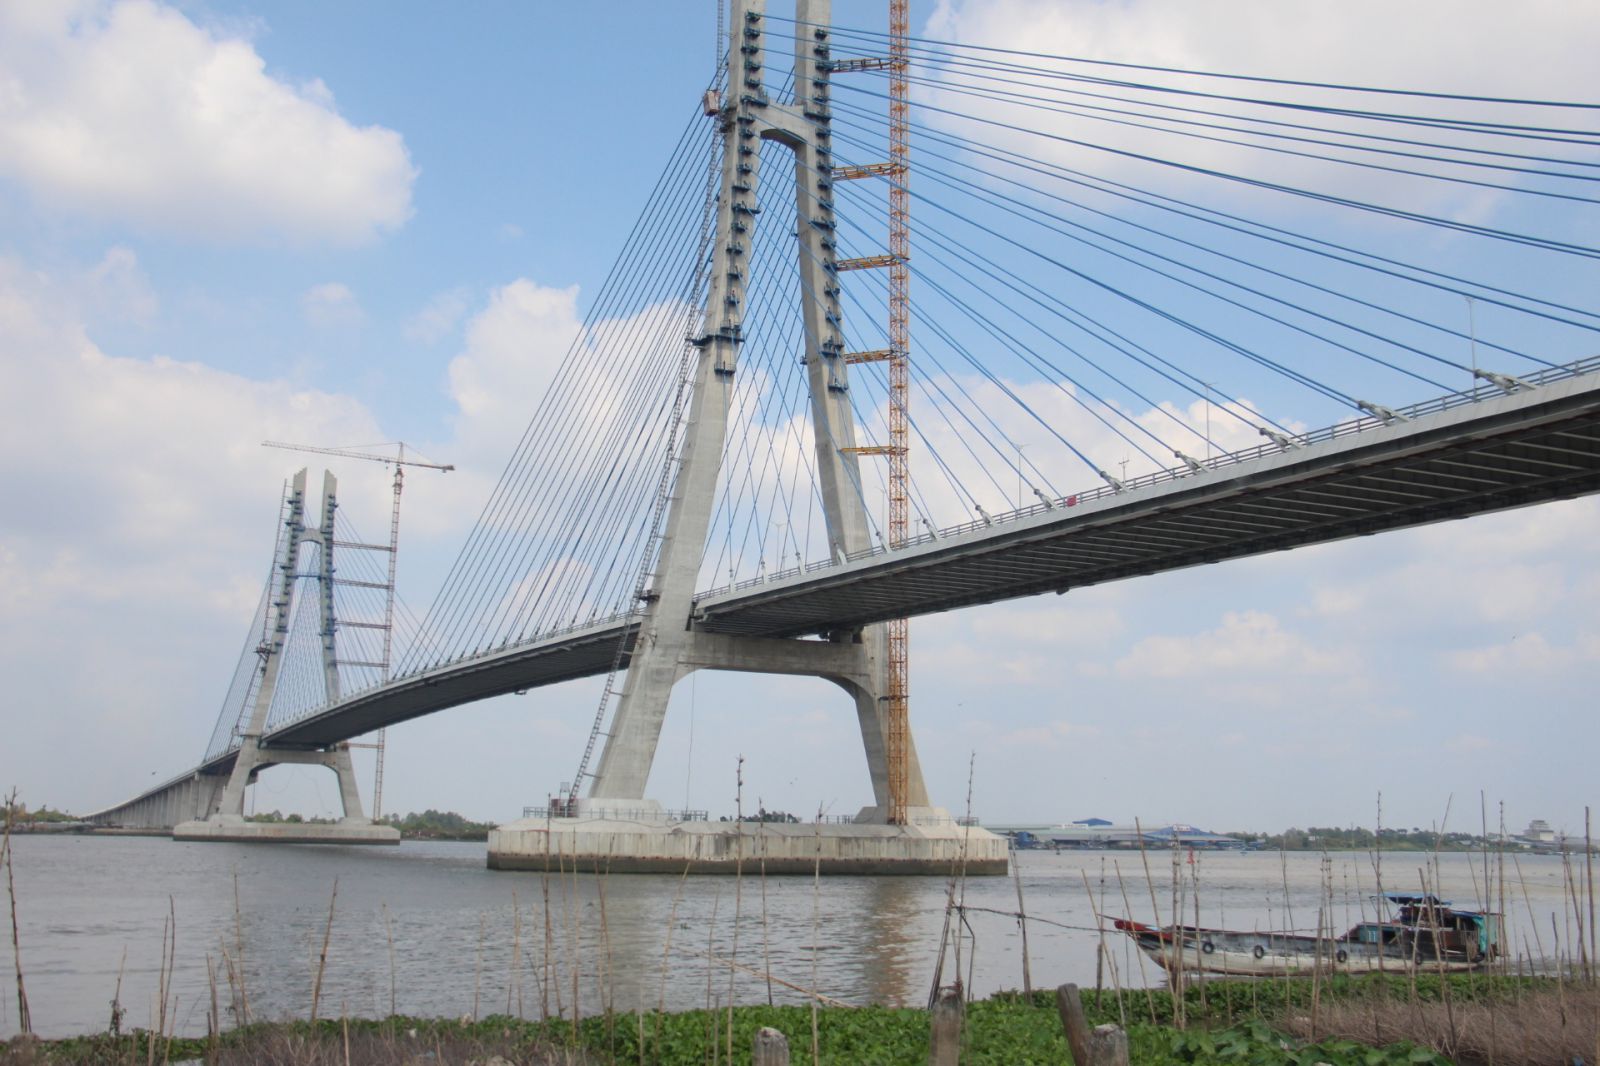 Cầu Vàm Cống bắc qua sông Hậu, nối tỉnh Đồng Tháp với TP Cần Thơ đưa vào sử dụng sẽ tạo động lực phát triển kinh tế - xã hội khu vực ĐBSCL